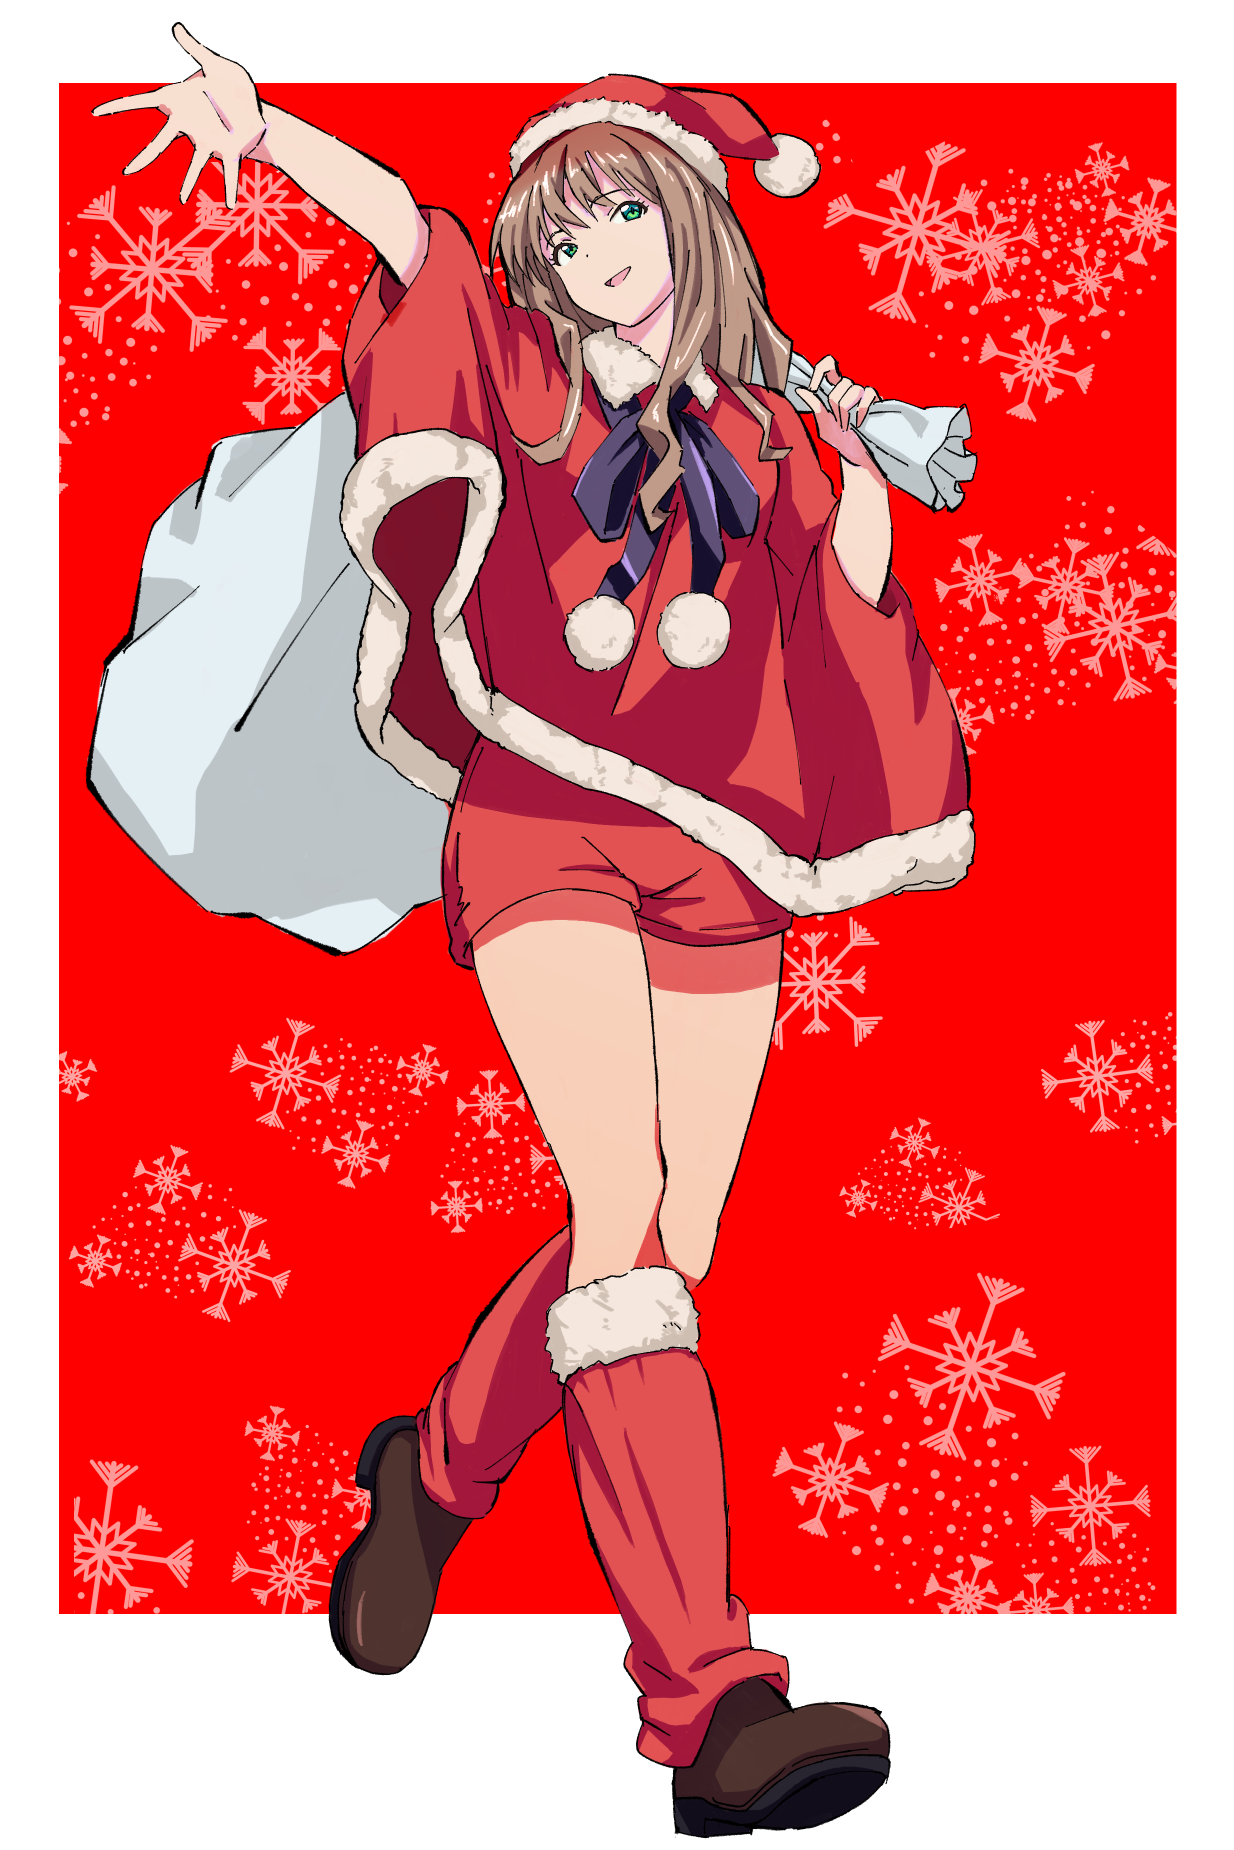 Anime 1234x1850 anime anime girls SSSS.Dynazenon Minami Yume long hair brunette solo artwork digital art fan art Christmas clothes